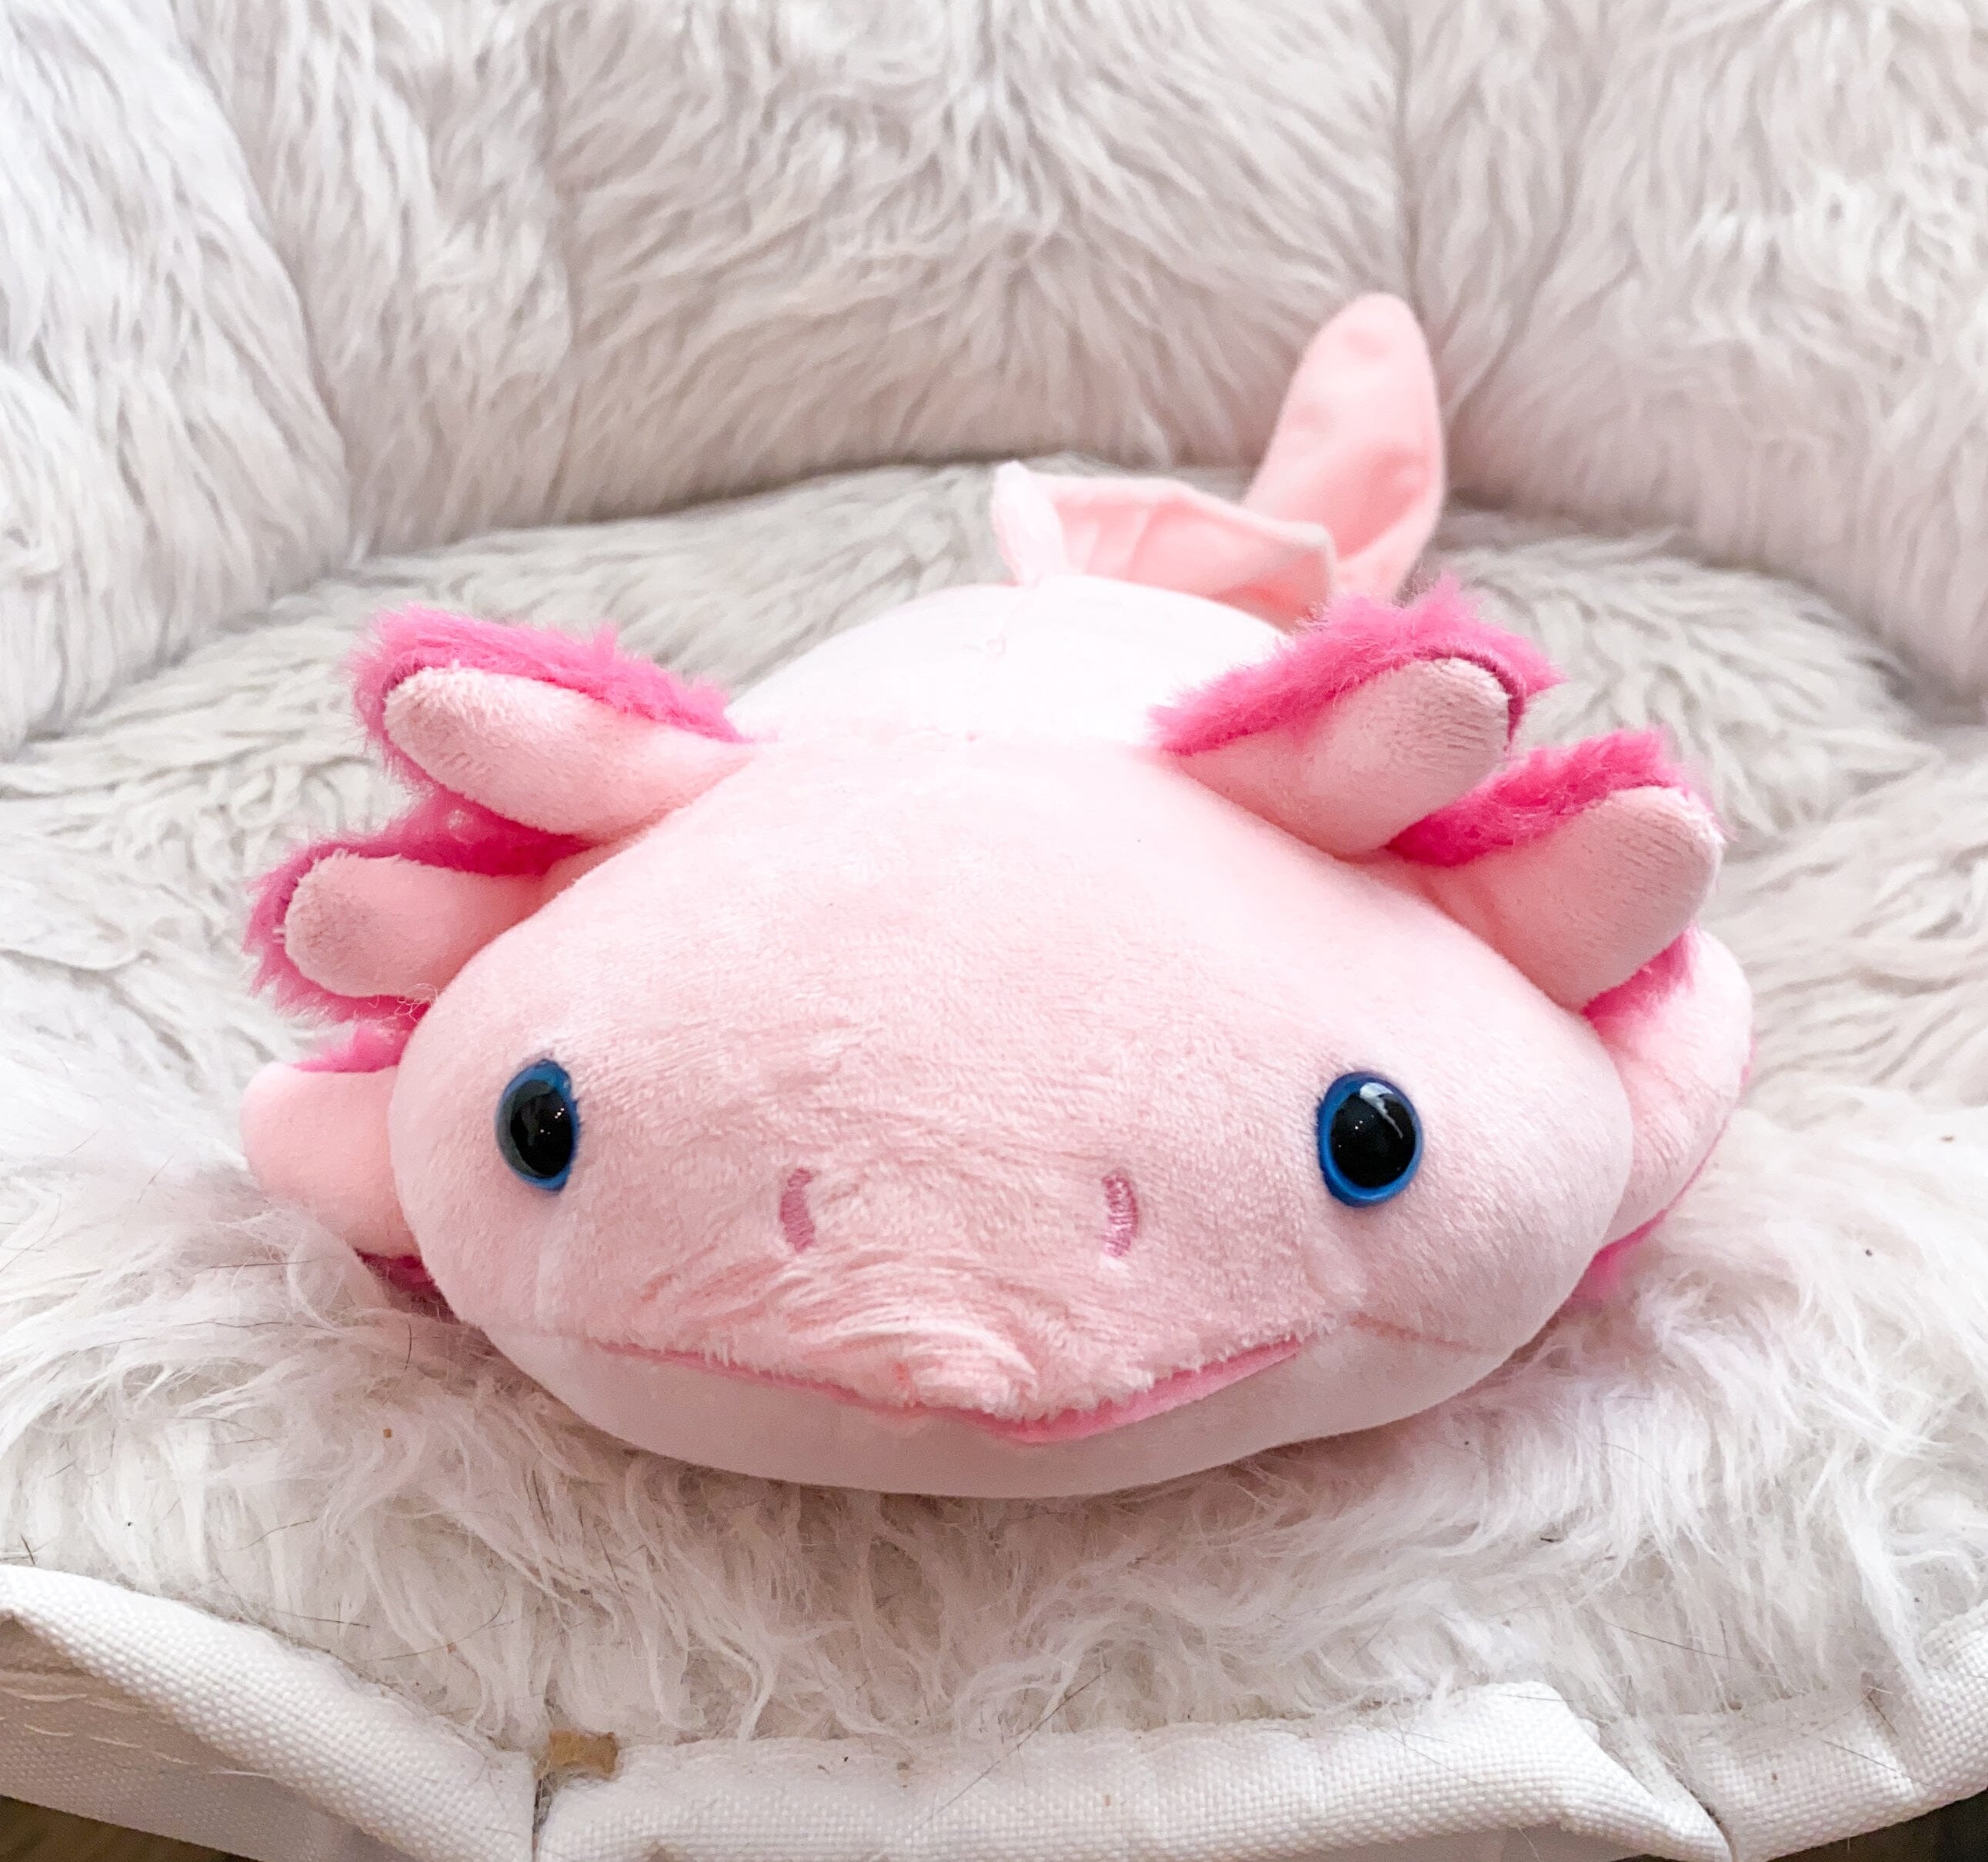 Axolotl Plush The Autistic Innovator 